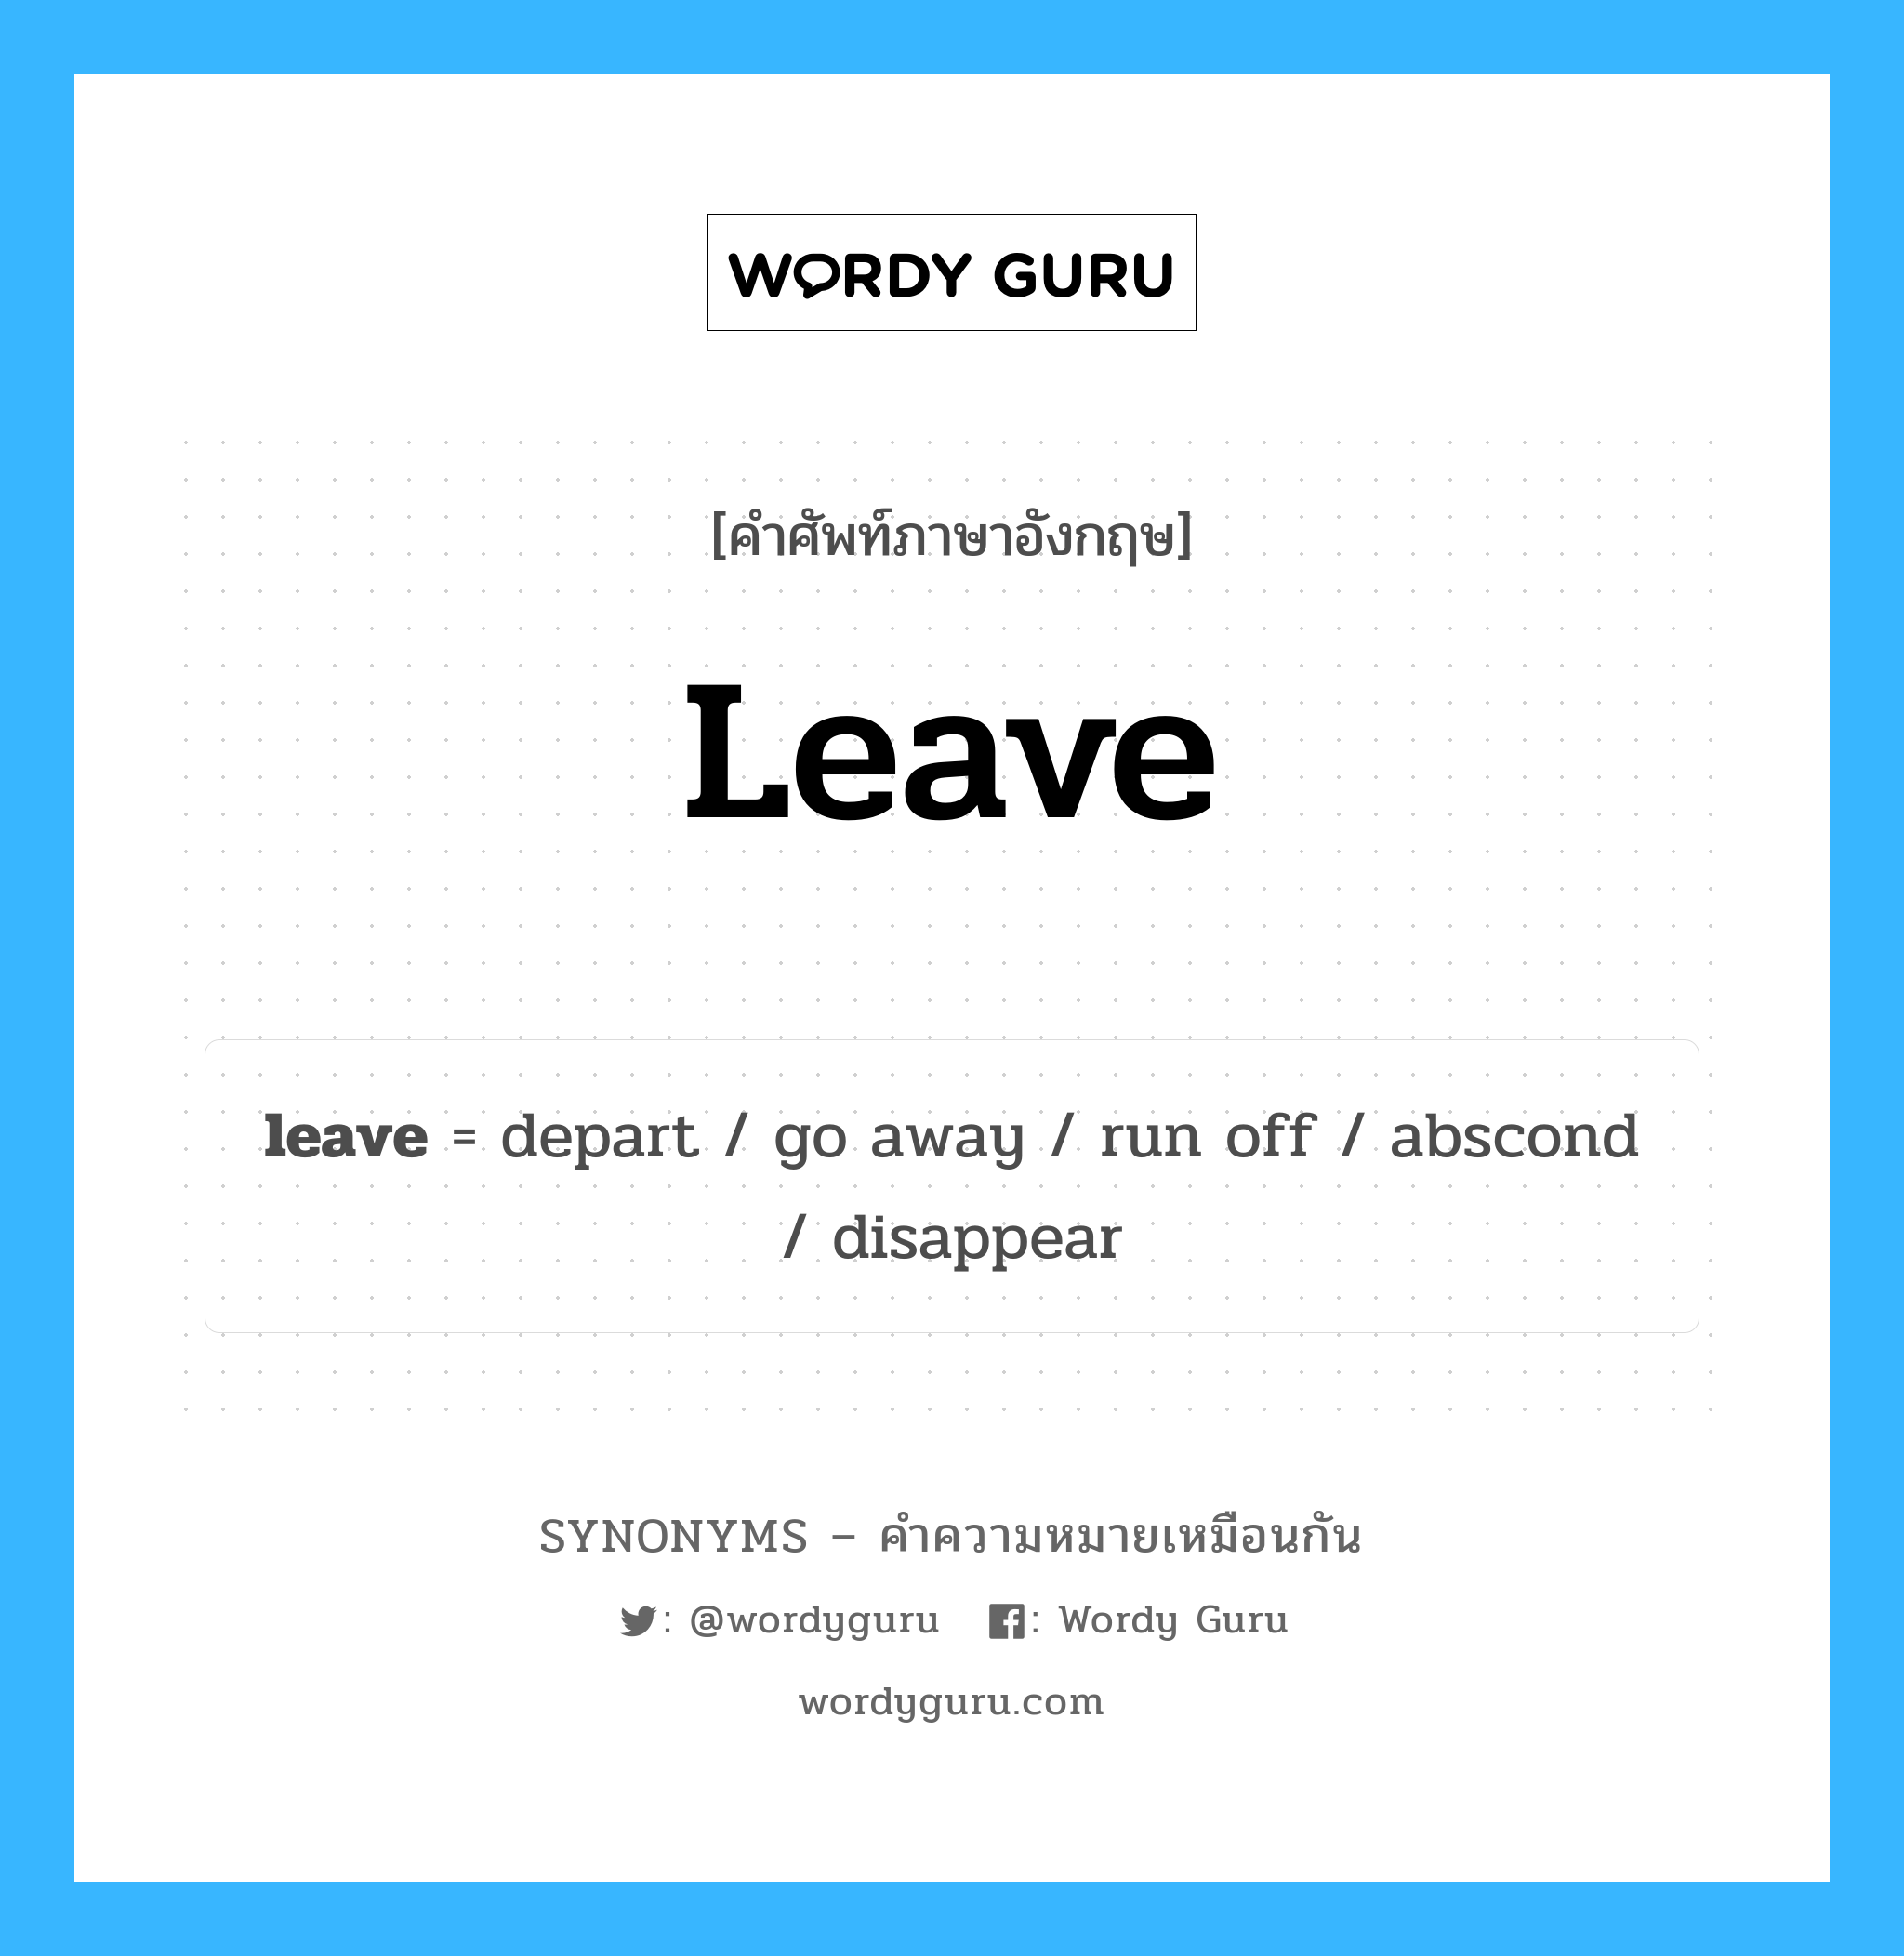 go away เป็นหนึ่งใน leave และมีคำอื่น ๆ อีกดังนี้, คำศัพท์ภาษาอังกฤษ go away ความหมายคล้ายกันกับ leave แปลว่า ไปให้พ้น หมวด leave